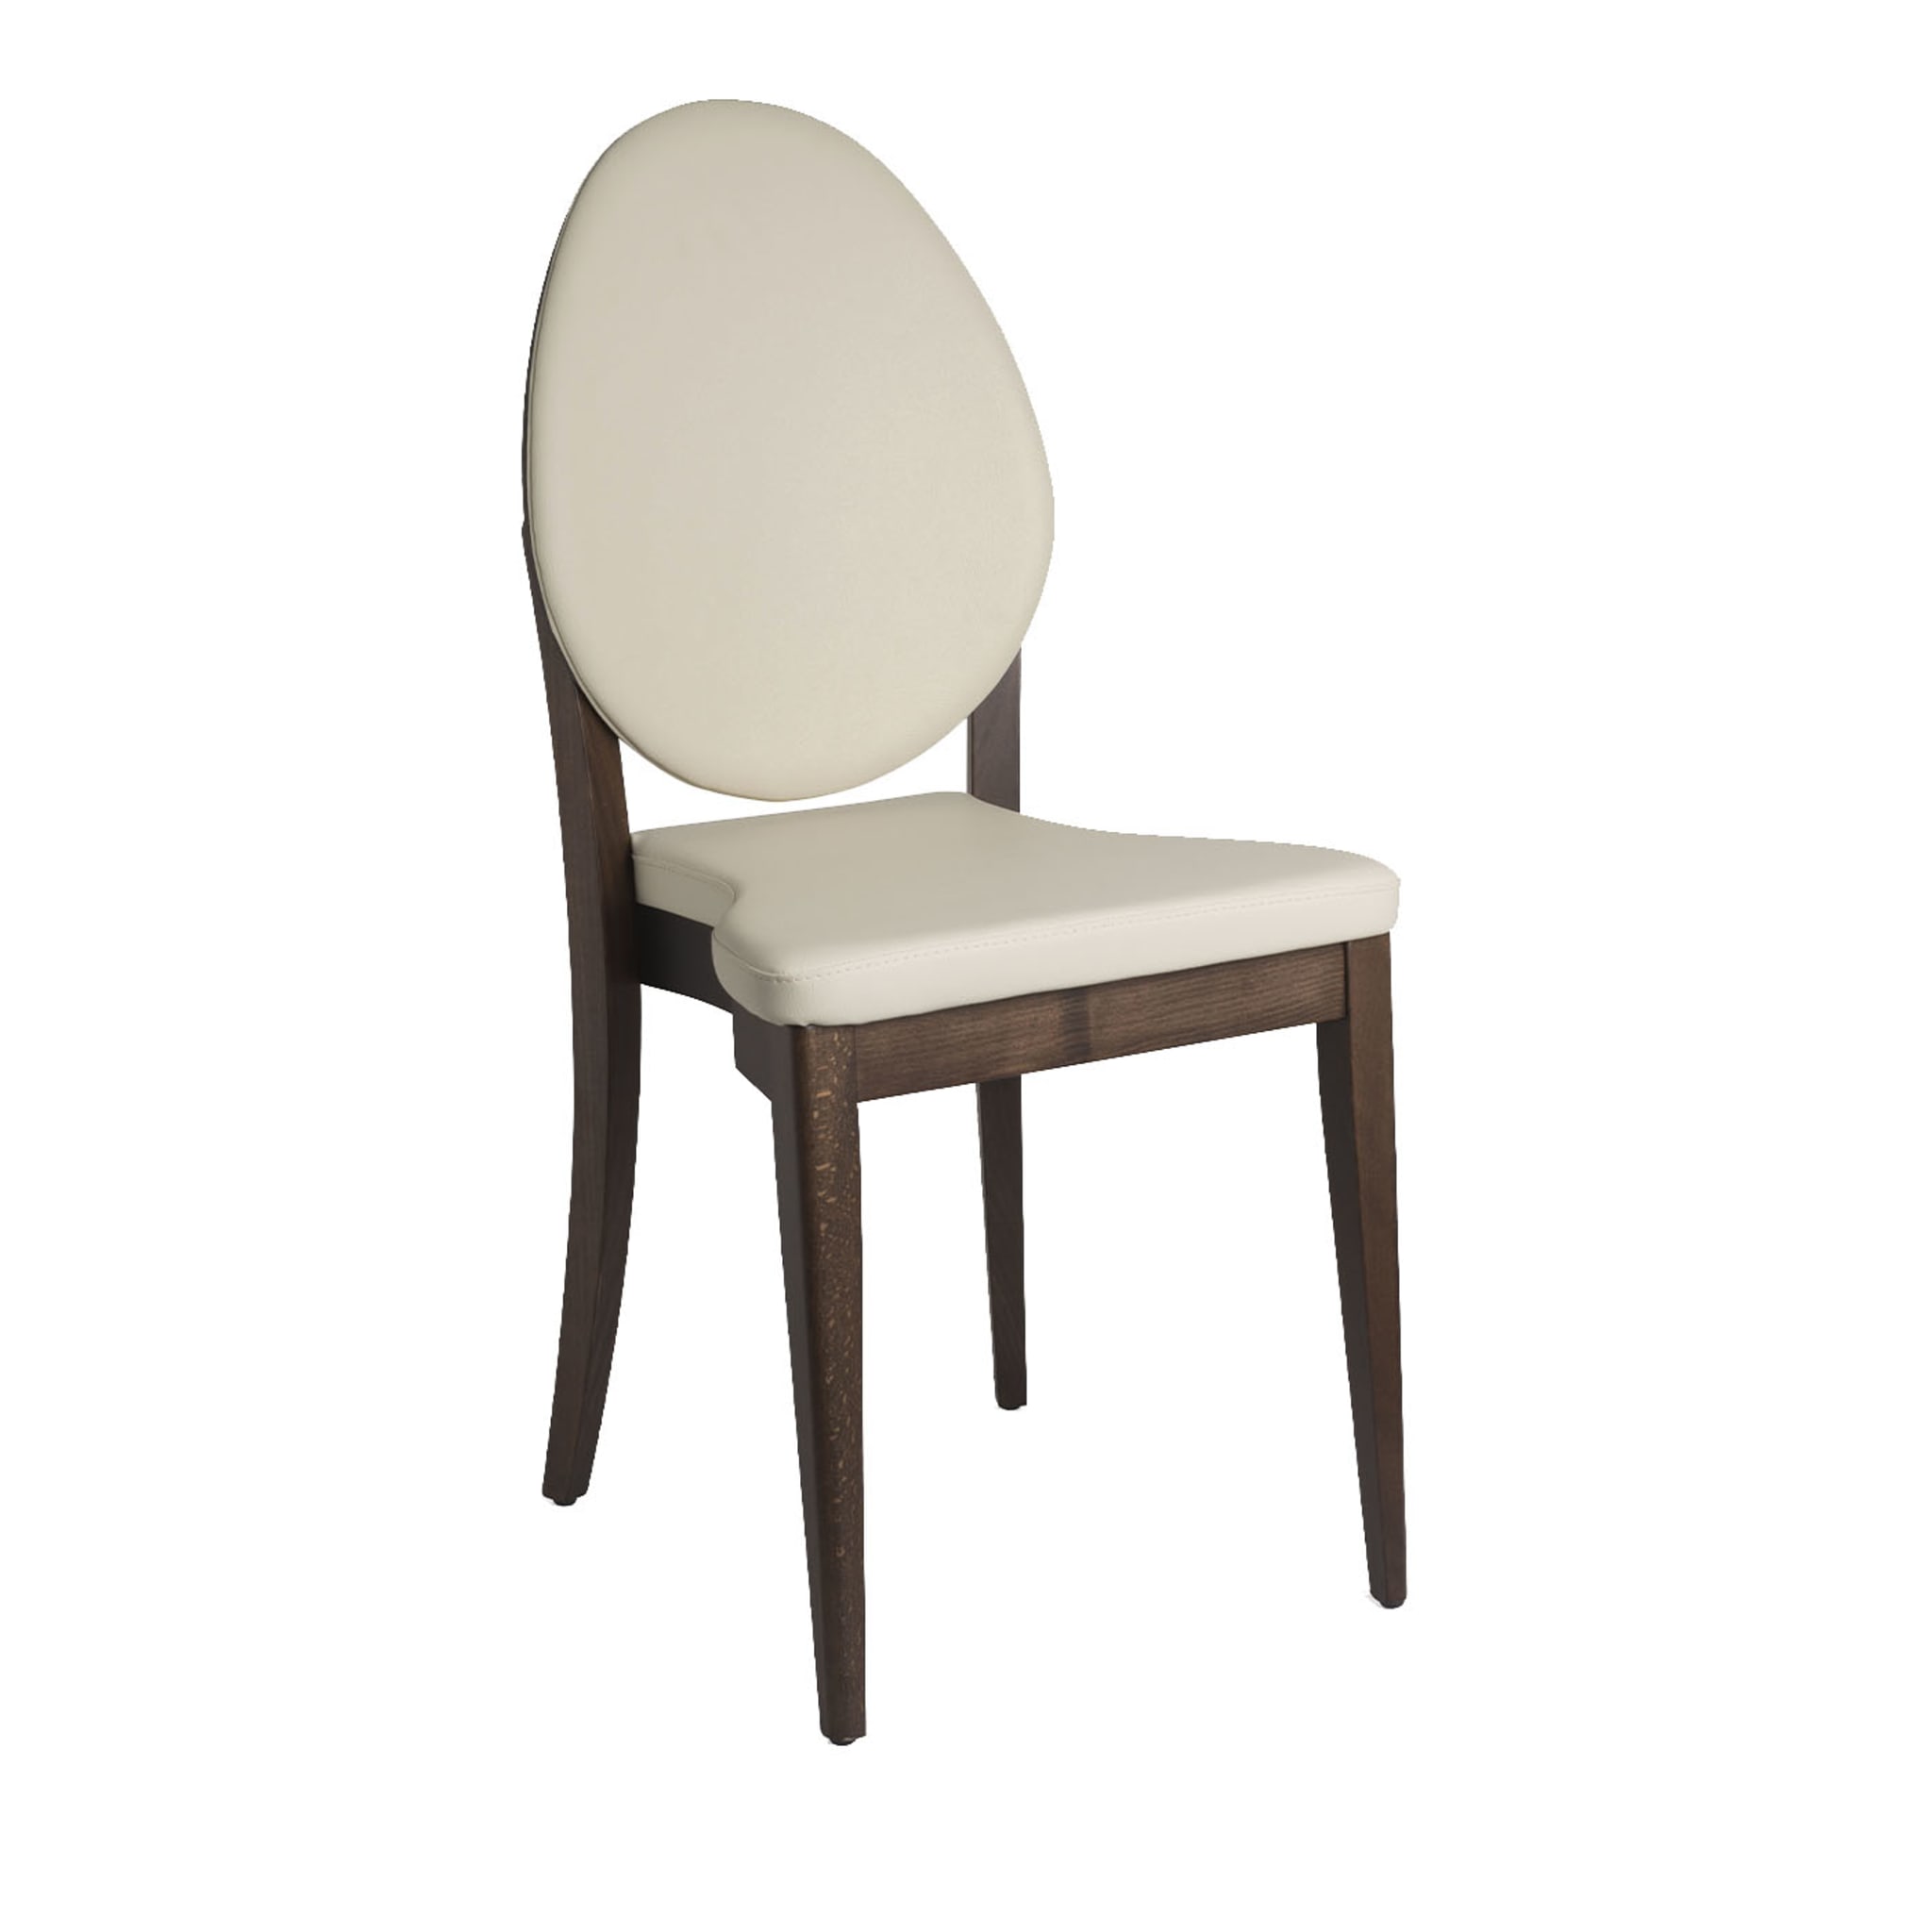 Malaga White Chair - Main view